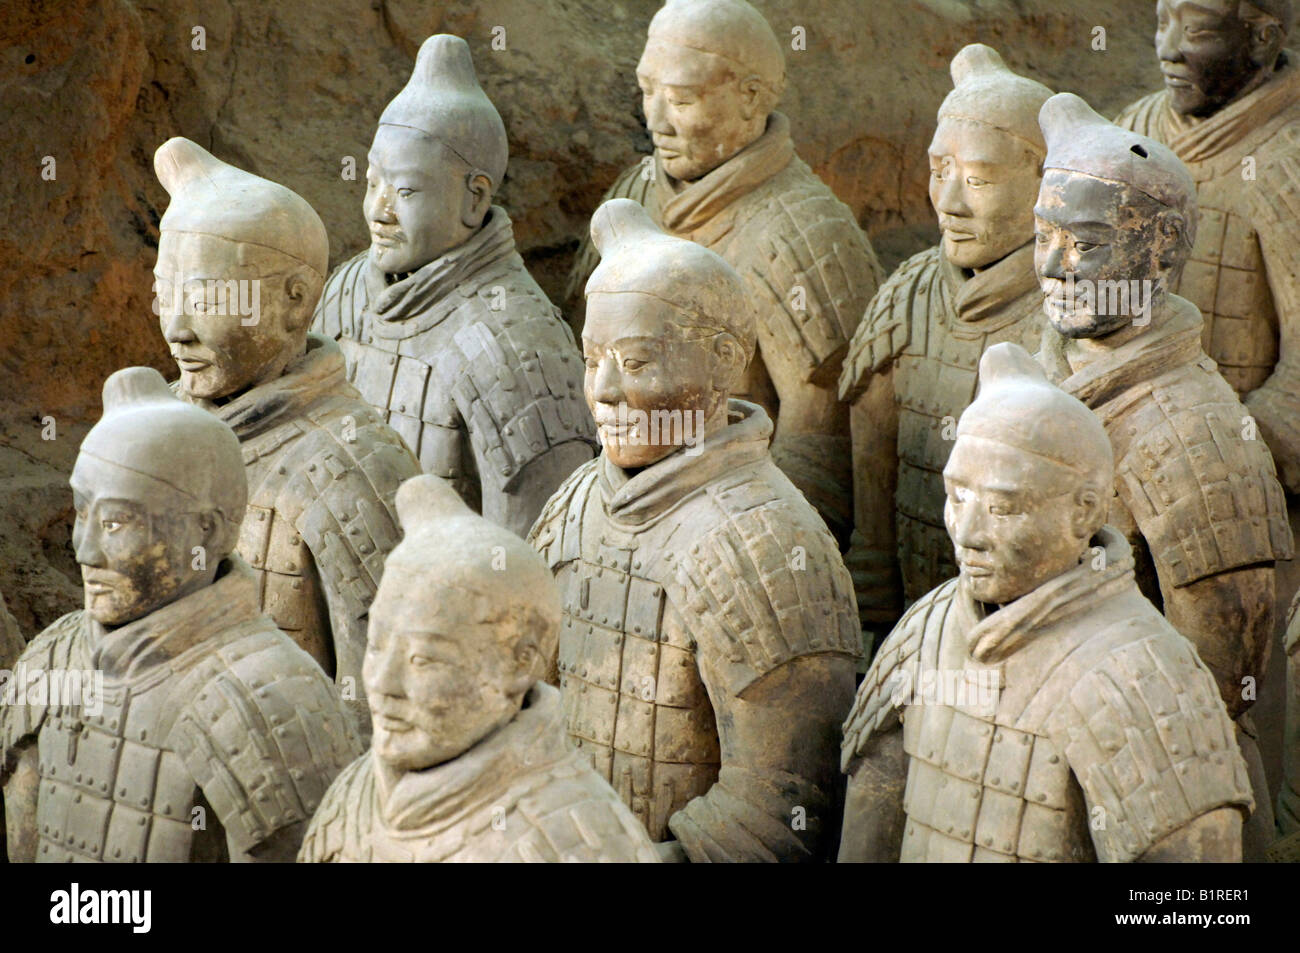 L'Armée de terre cuite, guerriers, partie du complexe funéraire, la fosse 1, mausolée du premier empereur Qin près de Xi'an, province du Shaanxi, Ch Banque D'Images